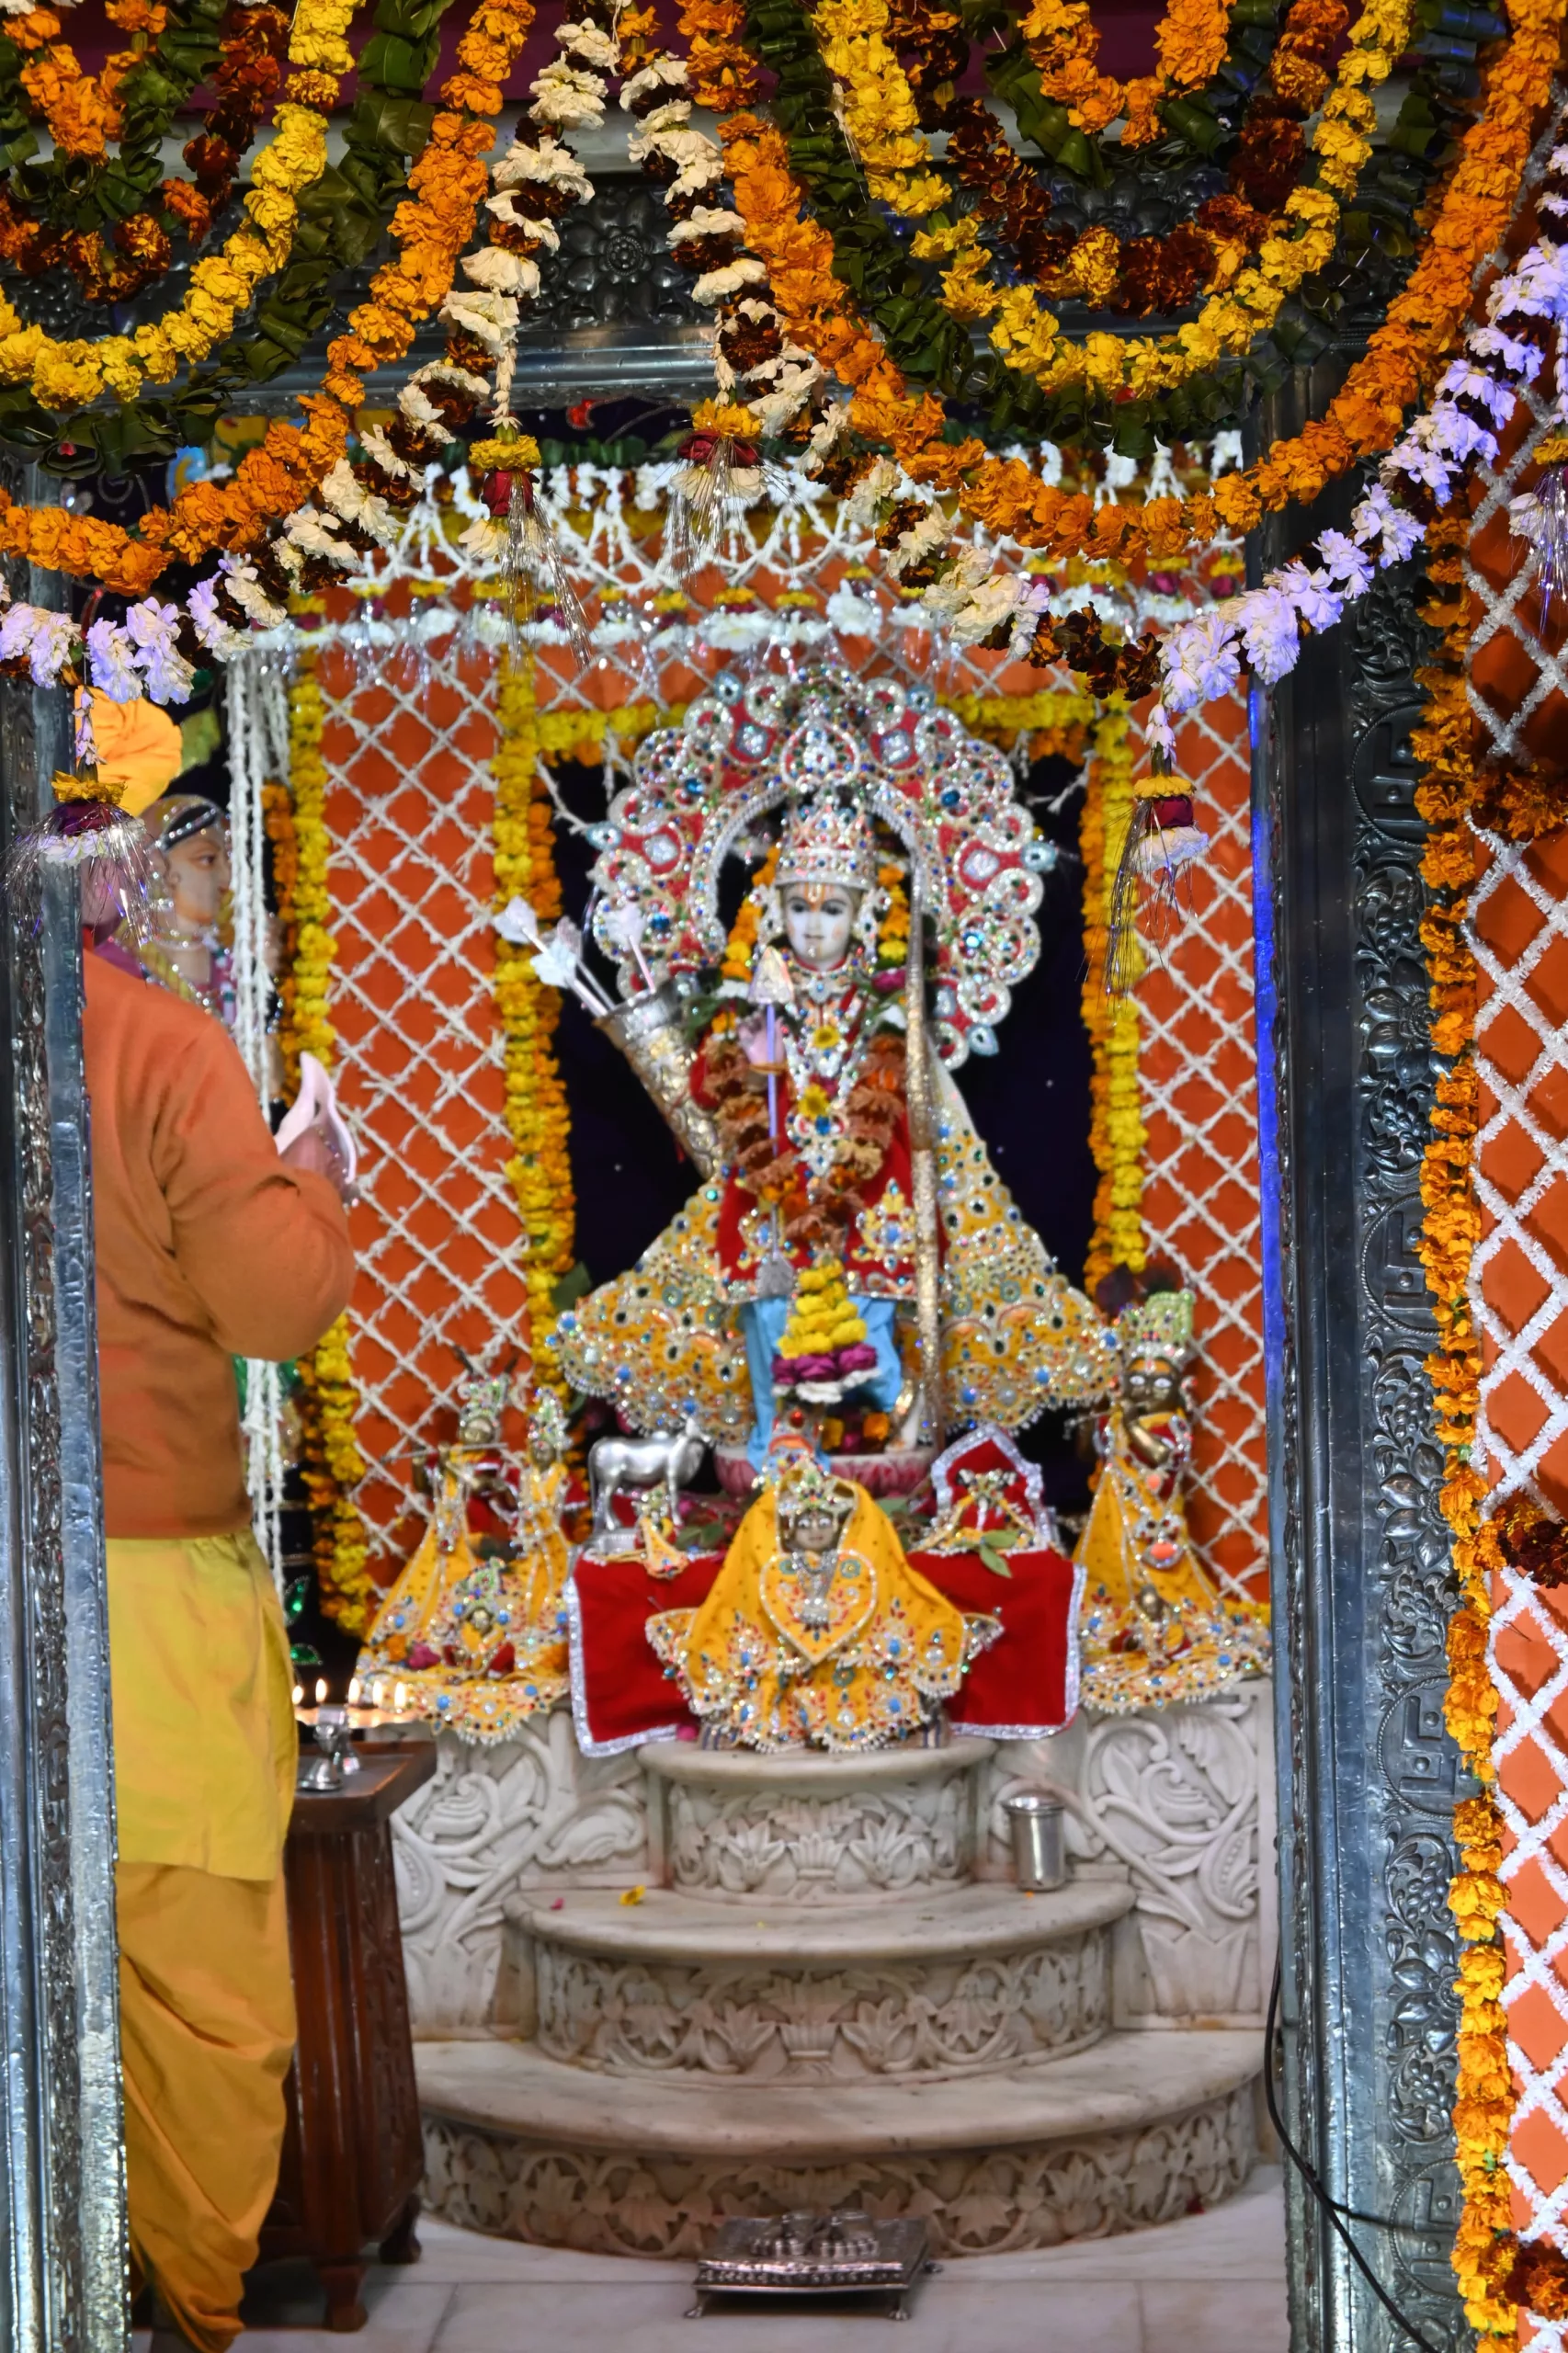 प्रभु श्री राम लला की हुई प्राण प्रतिष्ठा, रामभक्तों ने दी बधाइयां, दीपदान और आतिशबाजी कर मनाई दीपावली | New India Times